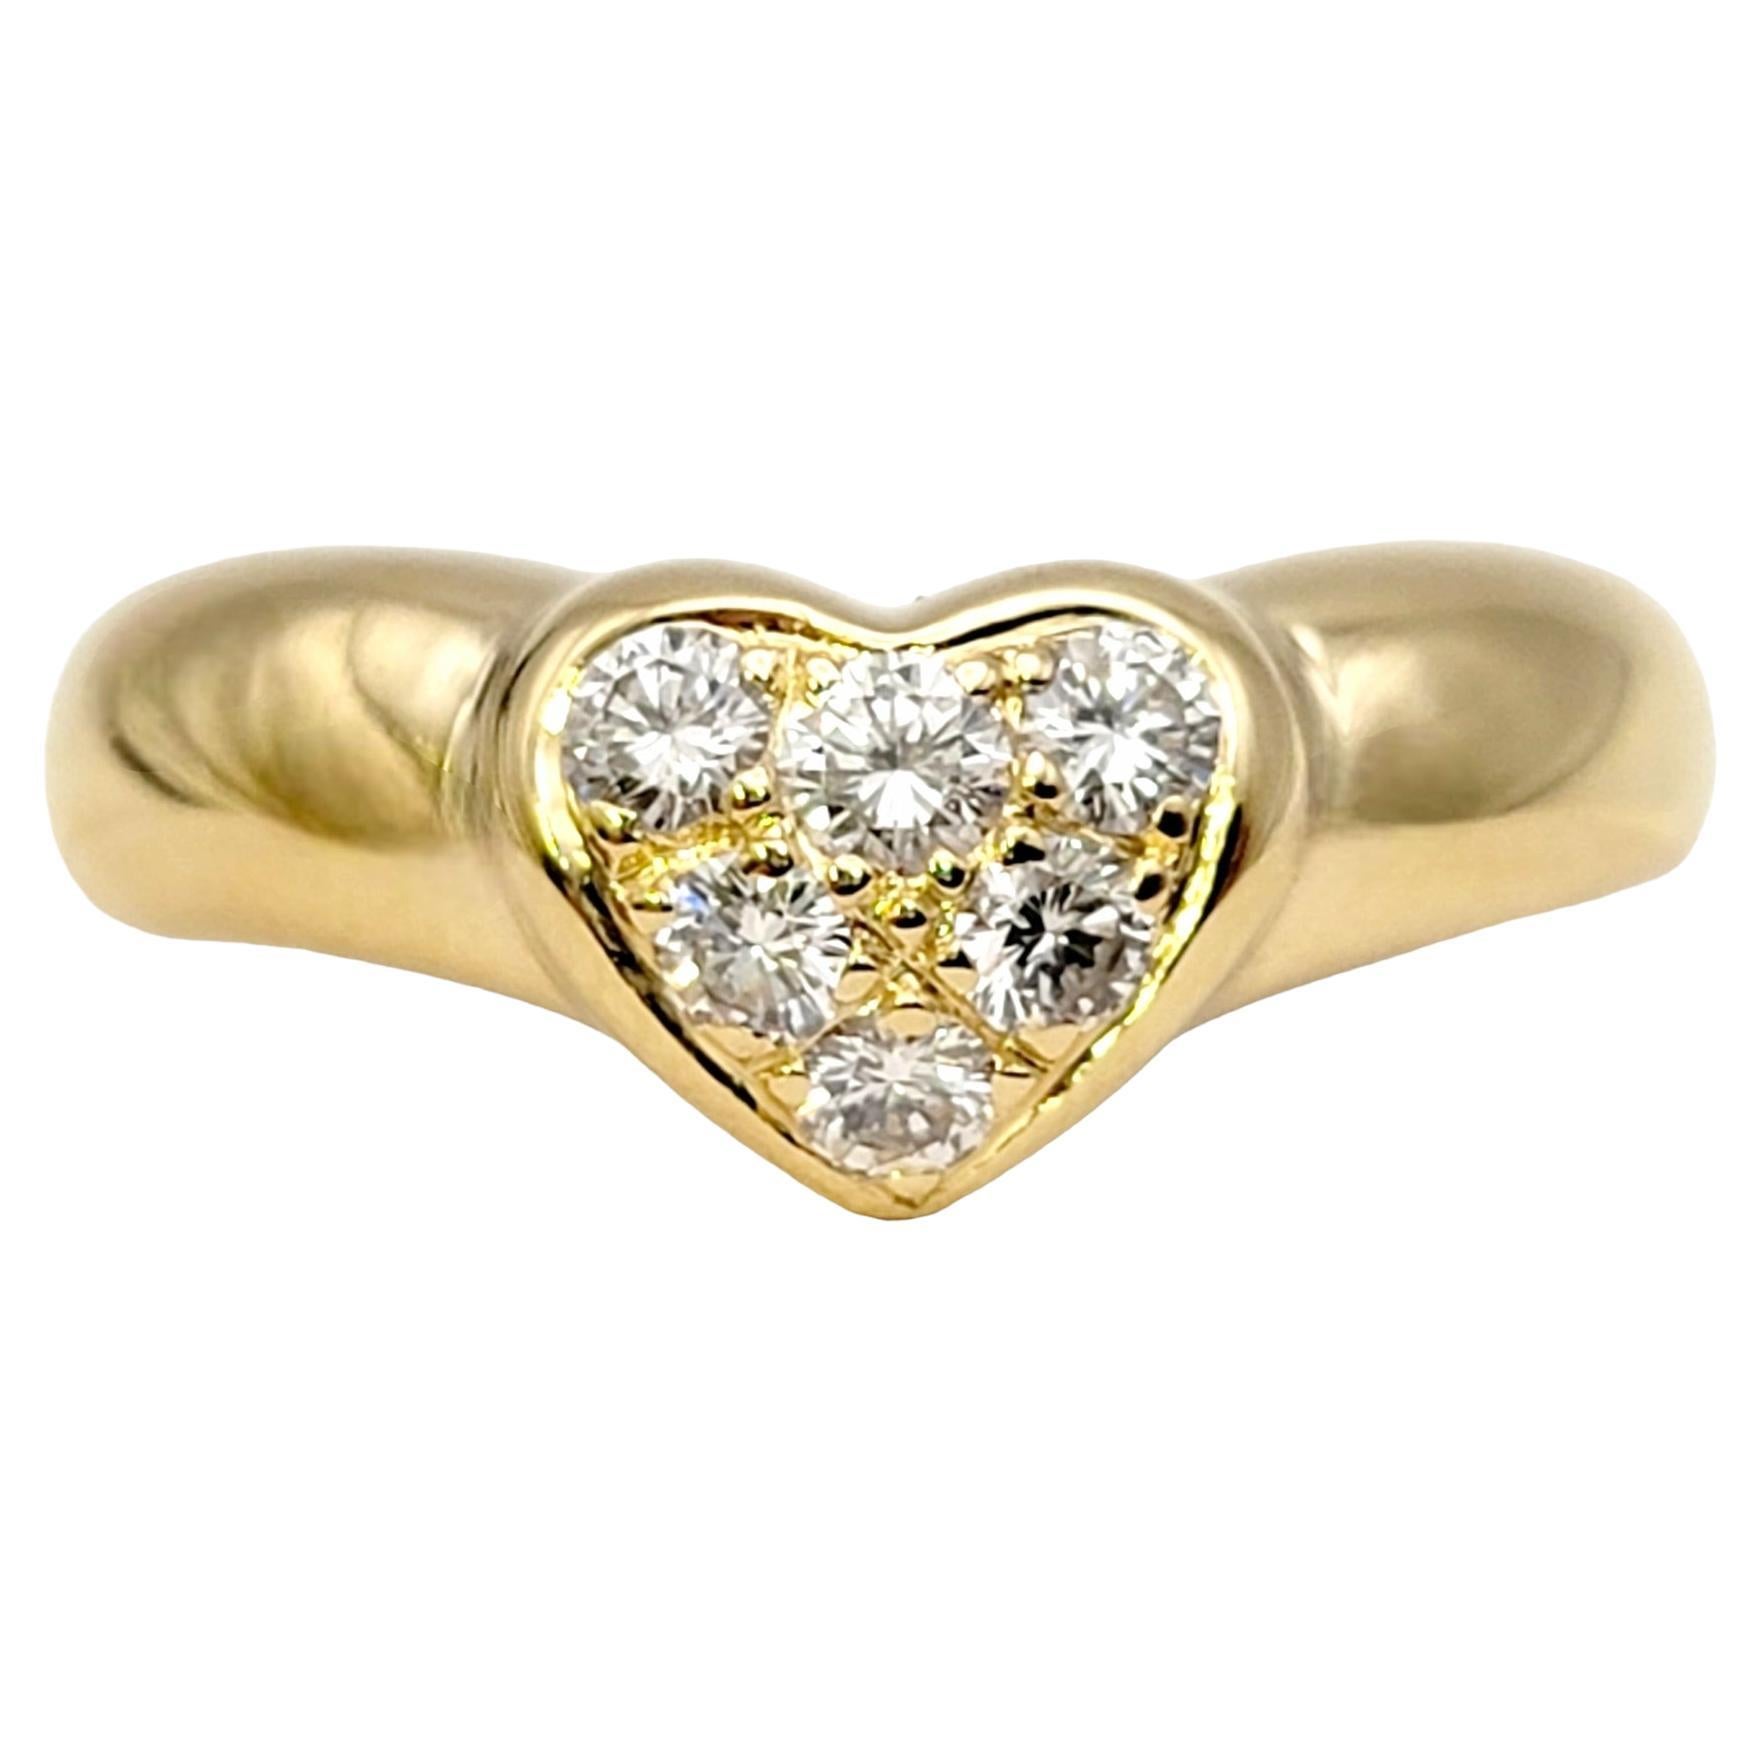 Vintage Tiffany & Co. Etoile, bague jonc en or jaune avec cœur en diamants ronds et brillants